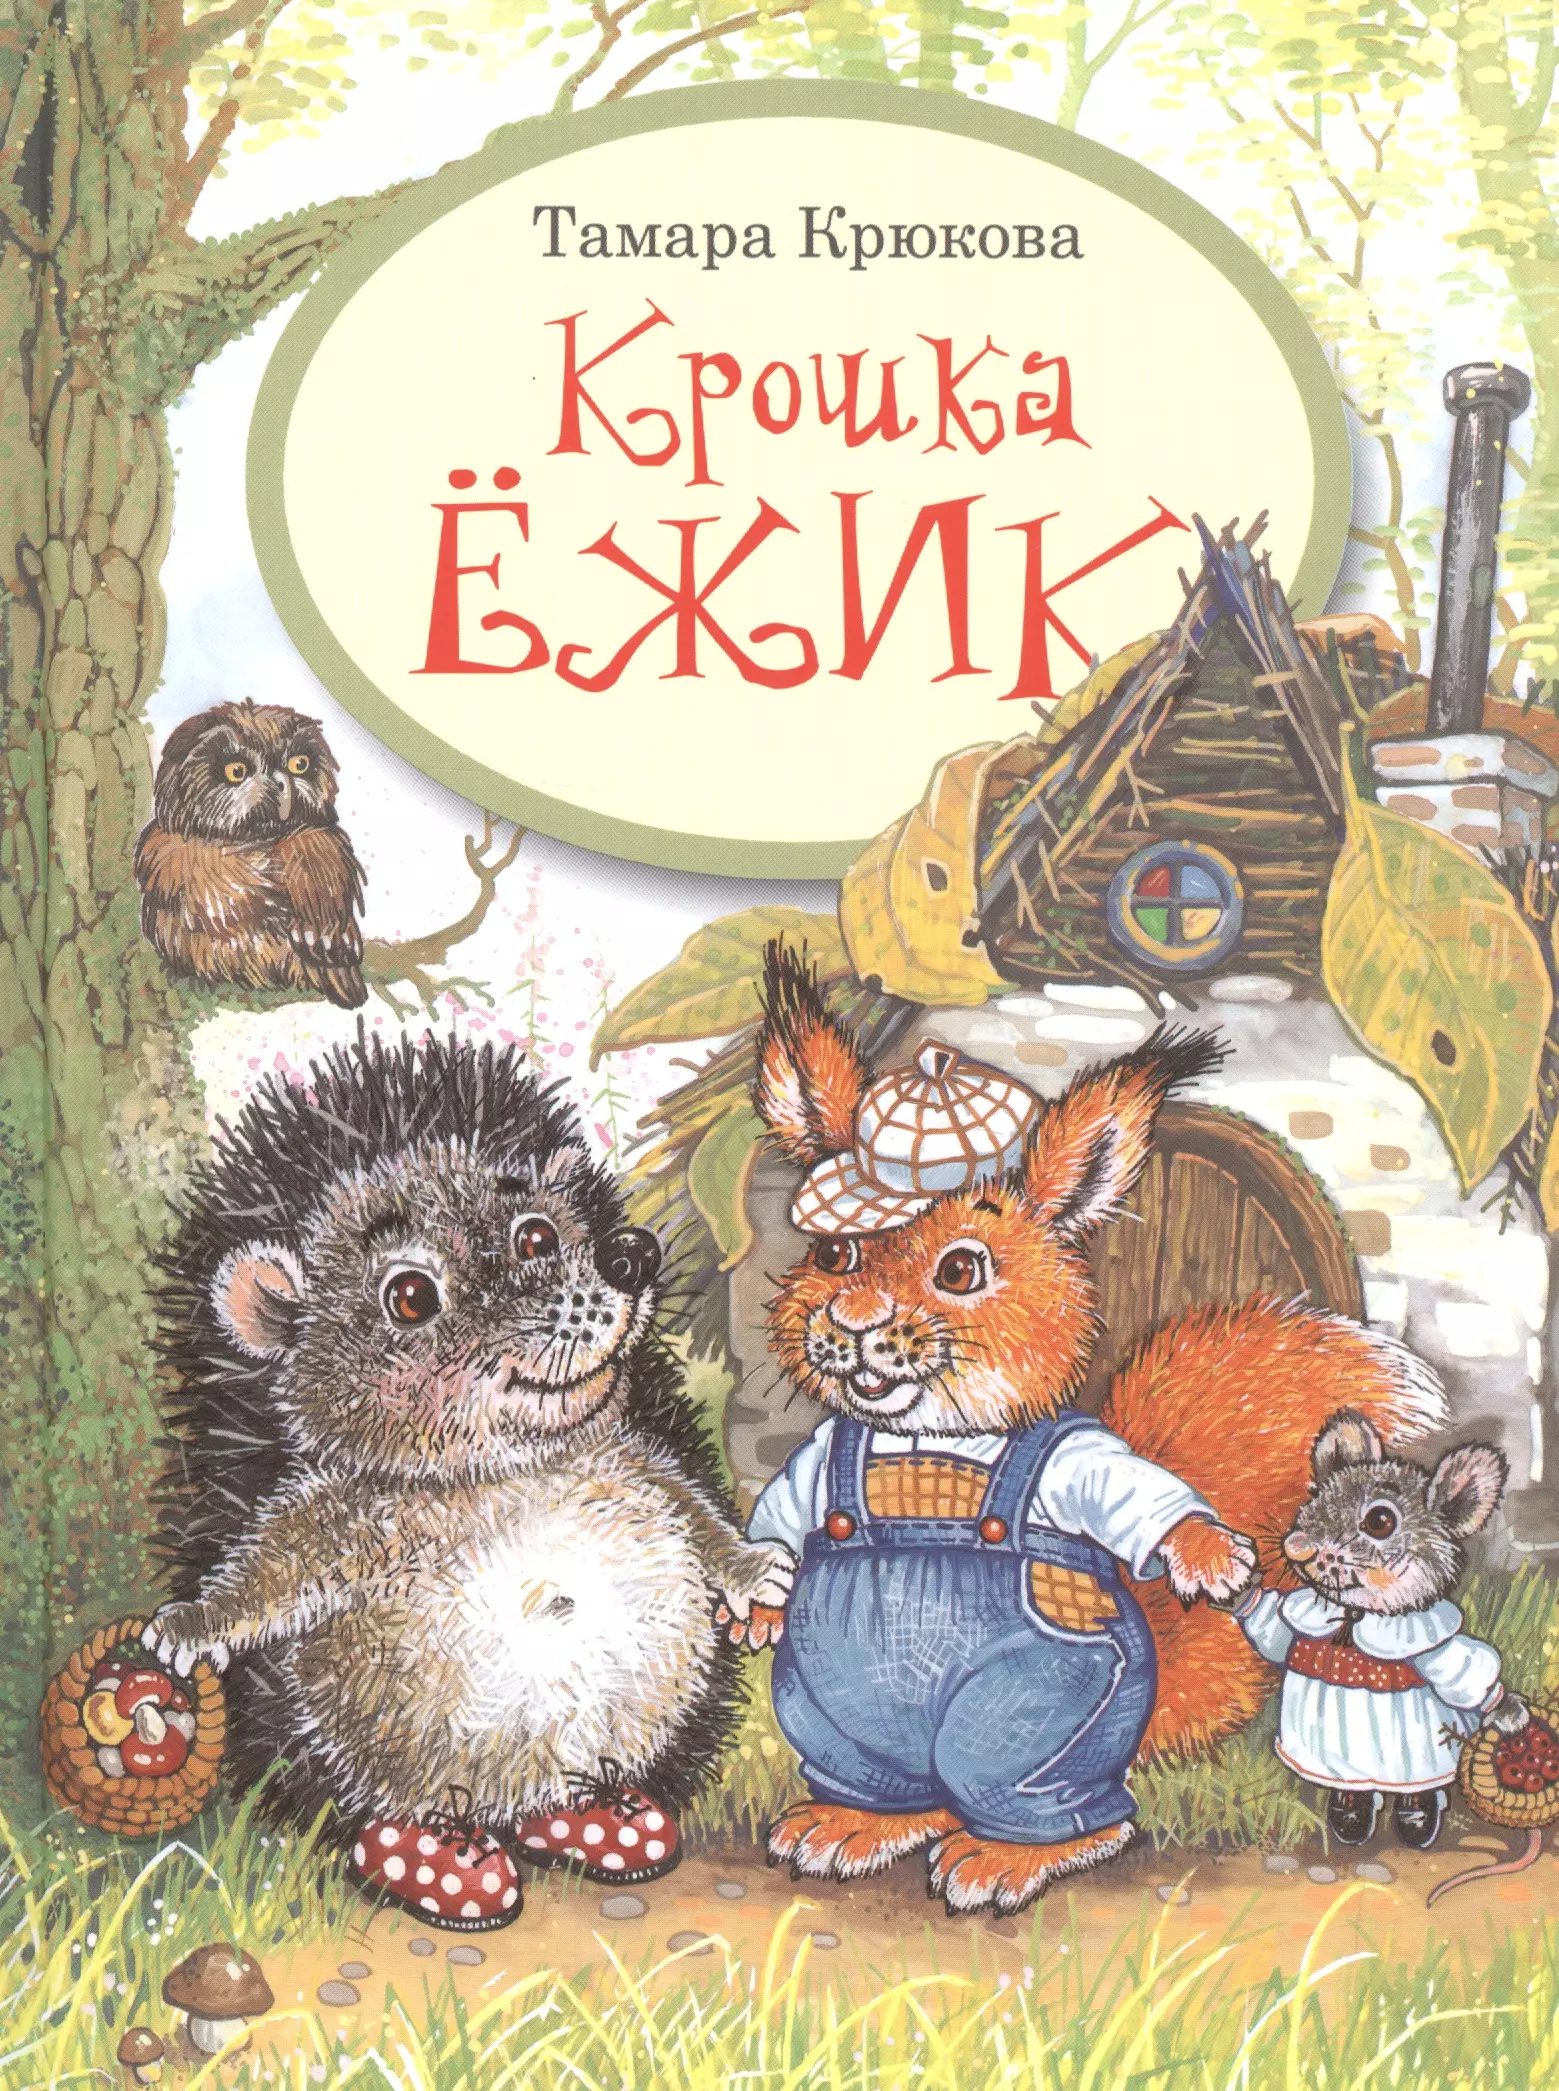 Крошка владимиров. Книги Тамары крюковой для детей. Книги про ежиков для детей.